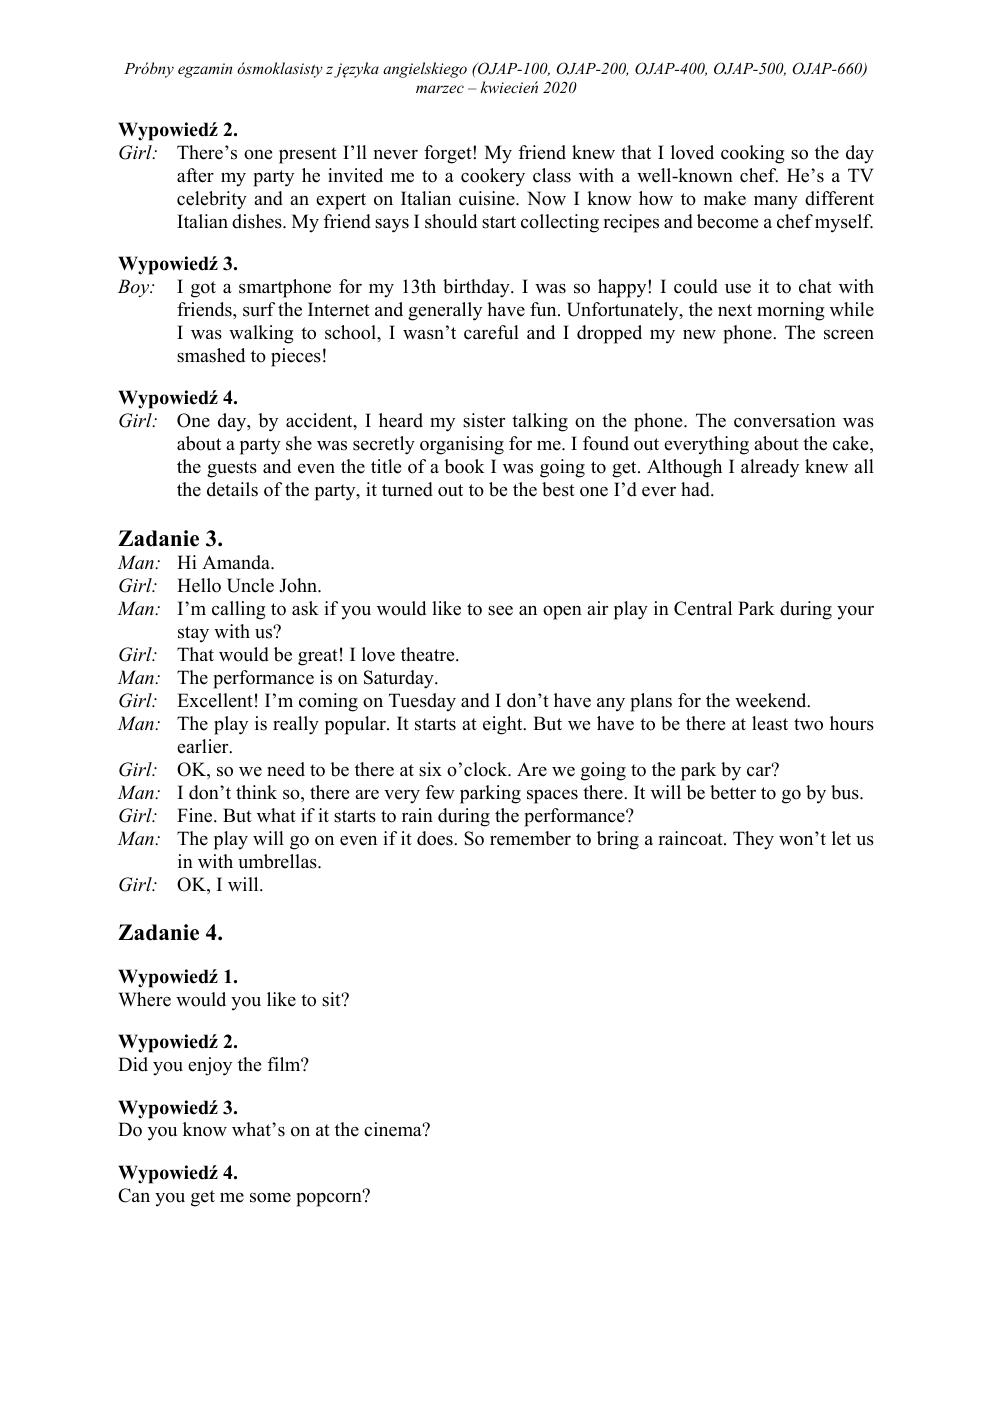 transkrypcja - angielski - egzamin ósmoklasisty 2020 próbny-2